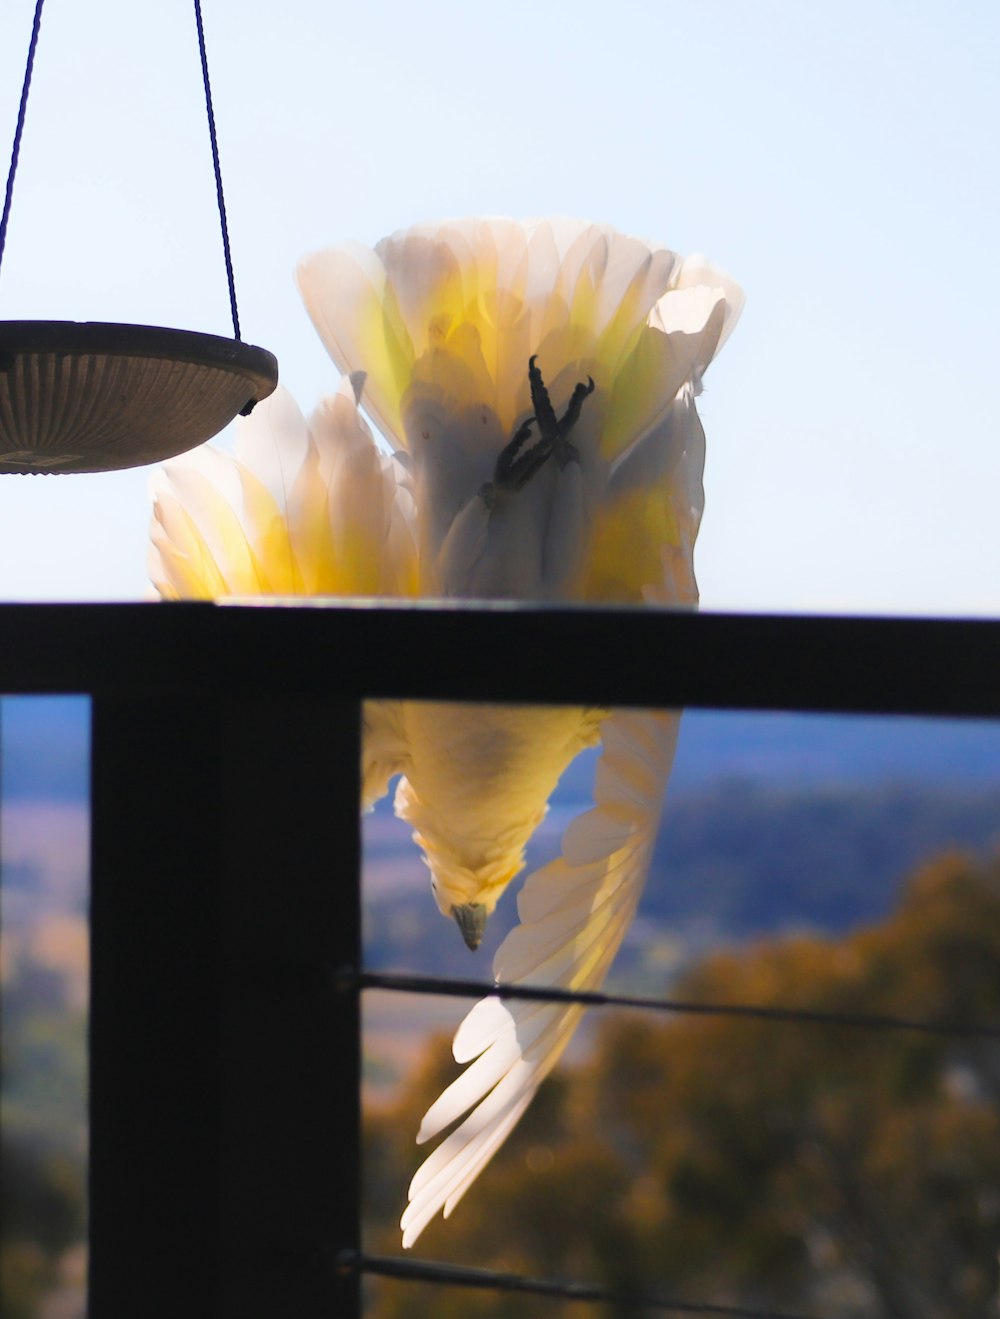 a bird is flying away from a bird feeder